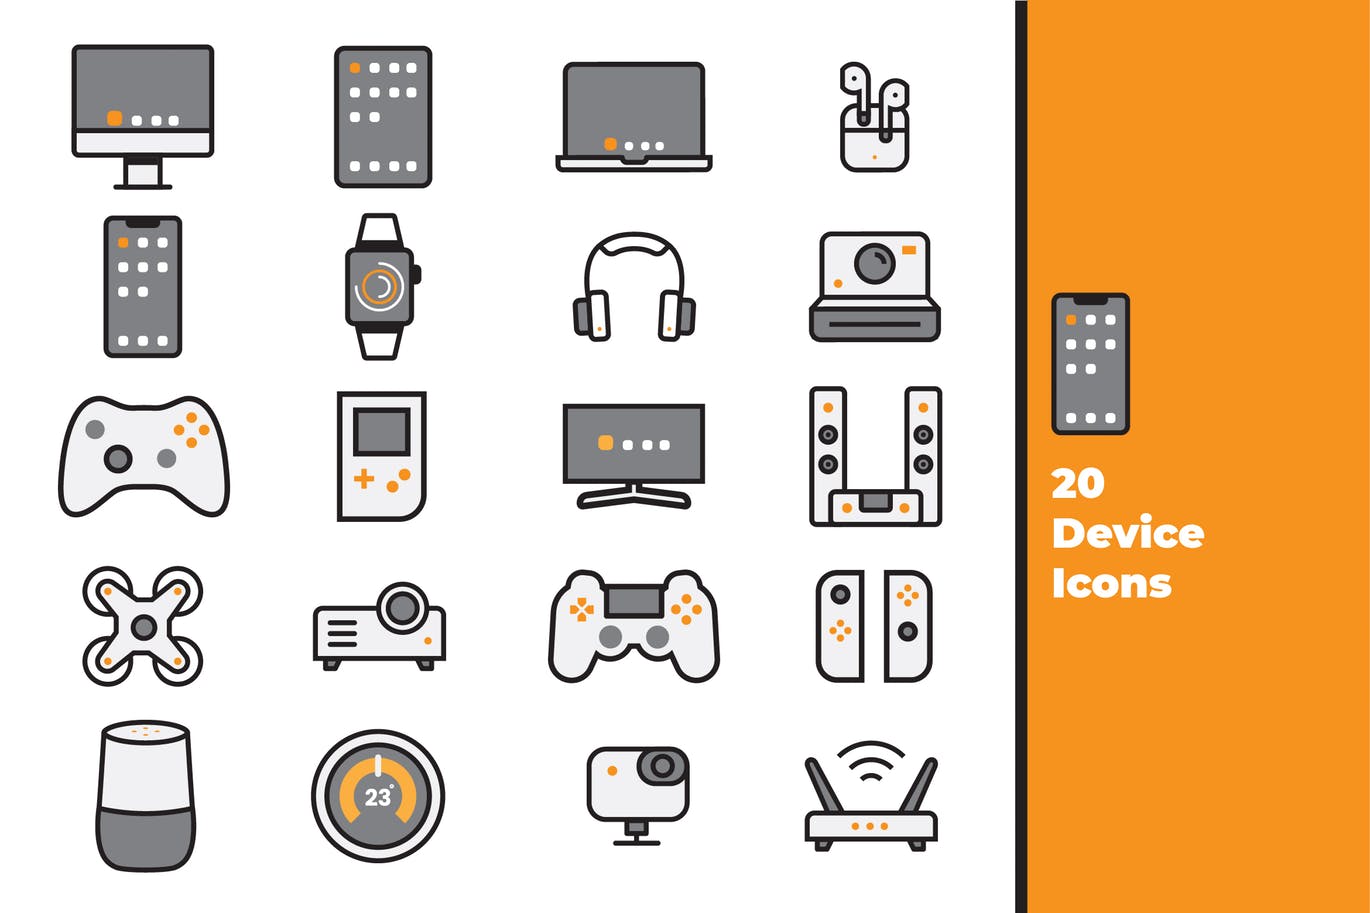 20种电子设备矢量第一素材精选图标素材 Device Icons插图